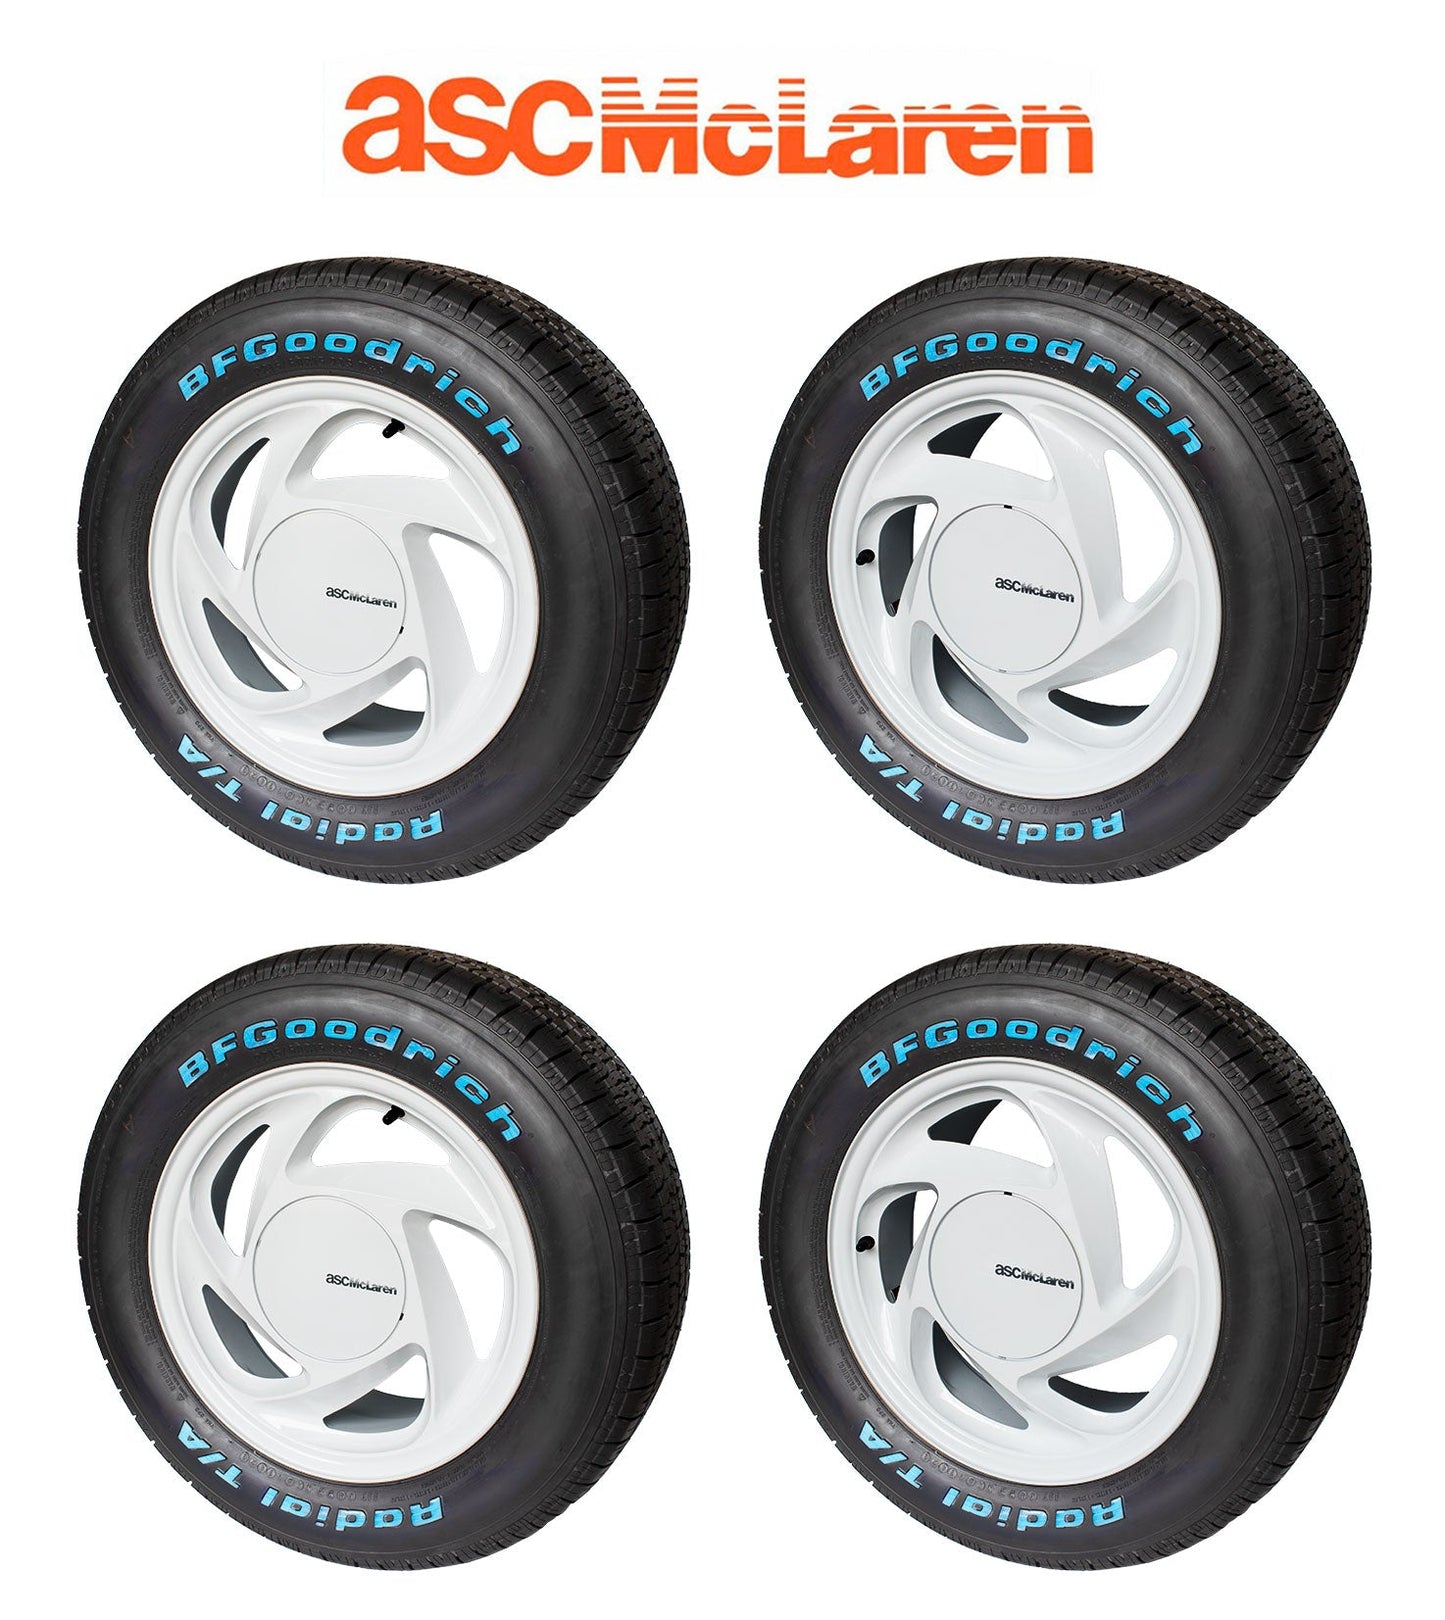 1989-1990 ASC McLaren Mustang OEM White Wheels & Tires w/ Center Caps Set of 4